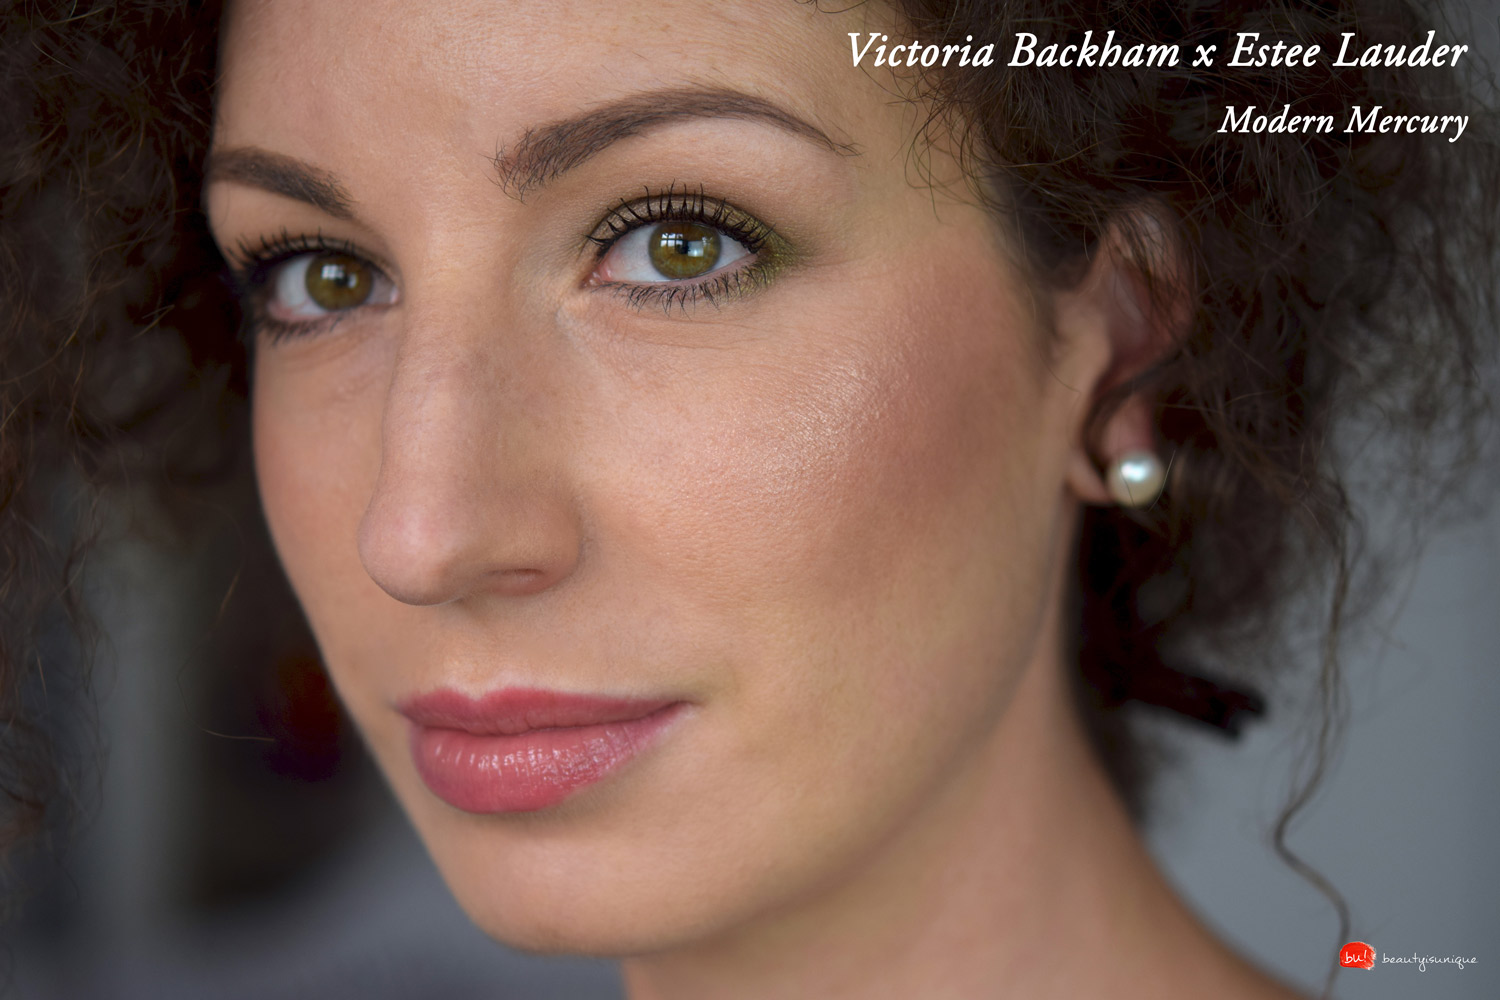 Victoria-beckham-estee-lauder-modern-mercury